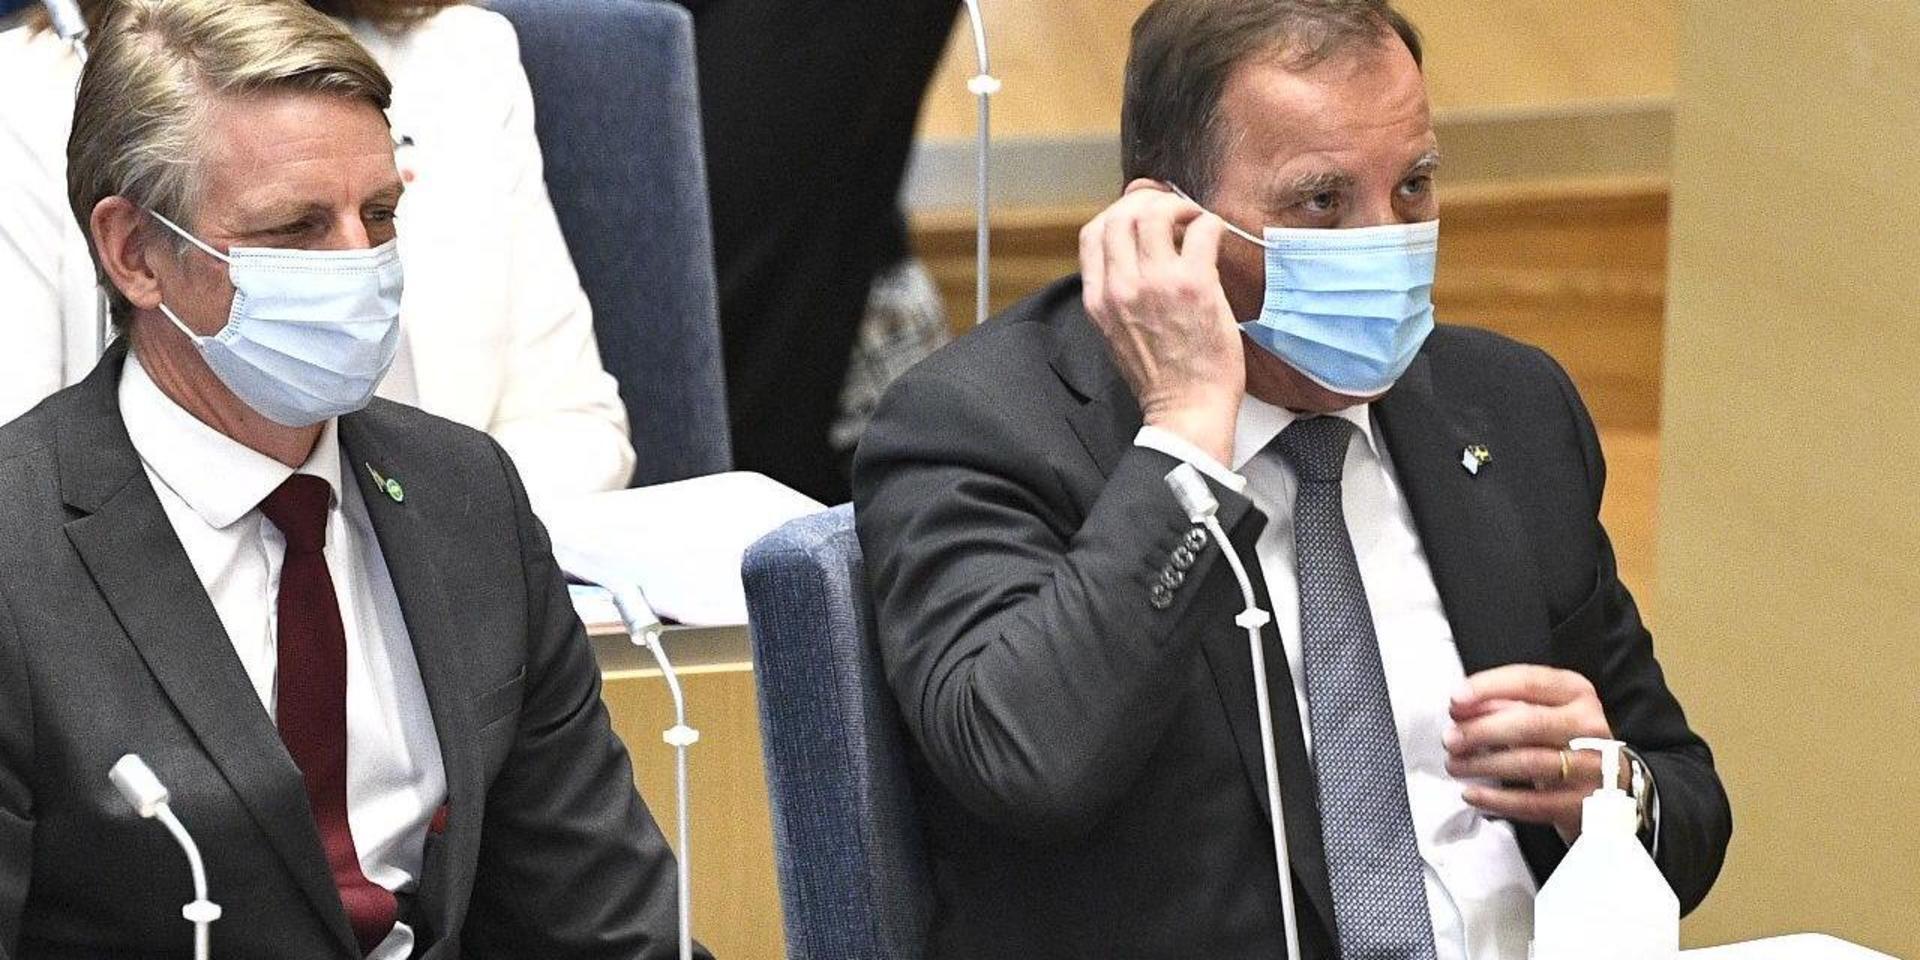 Miljö- och klimatminister Per Bolund (MP) och statsminister Stefan Löfven (S) i riksdagen vid misstroendeomröstningen.